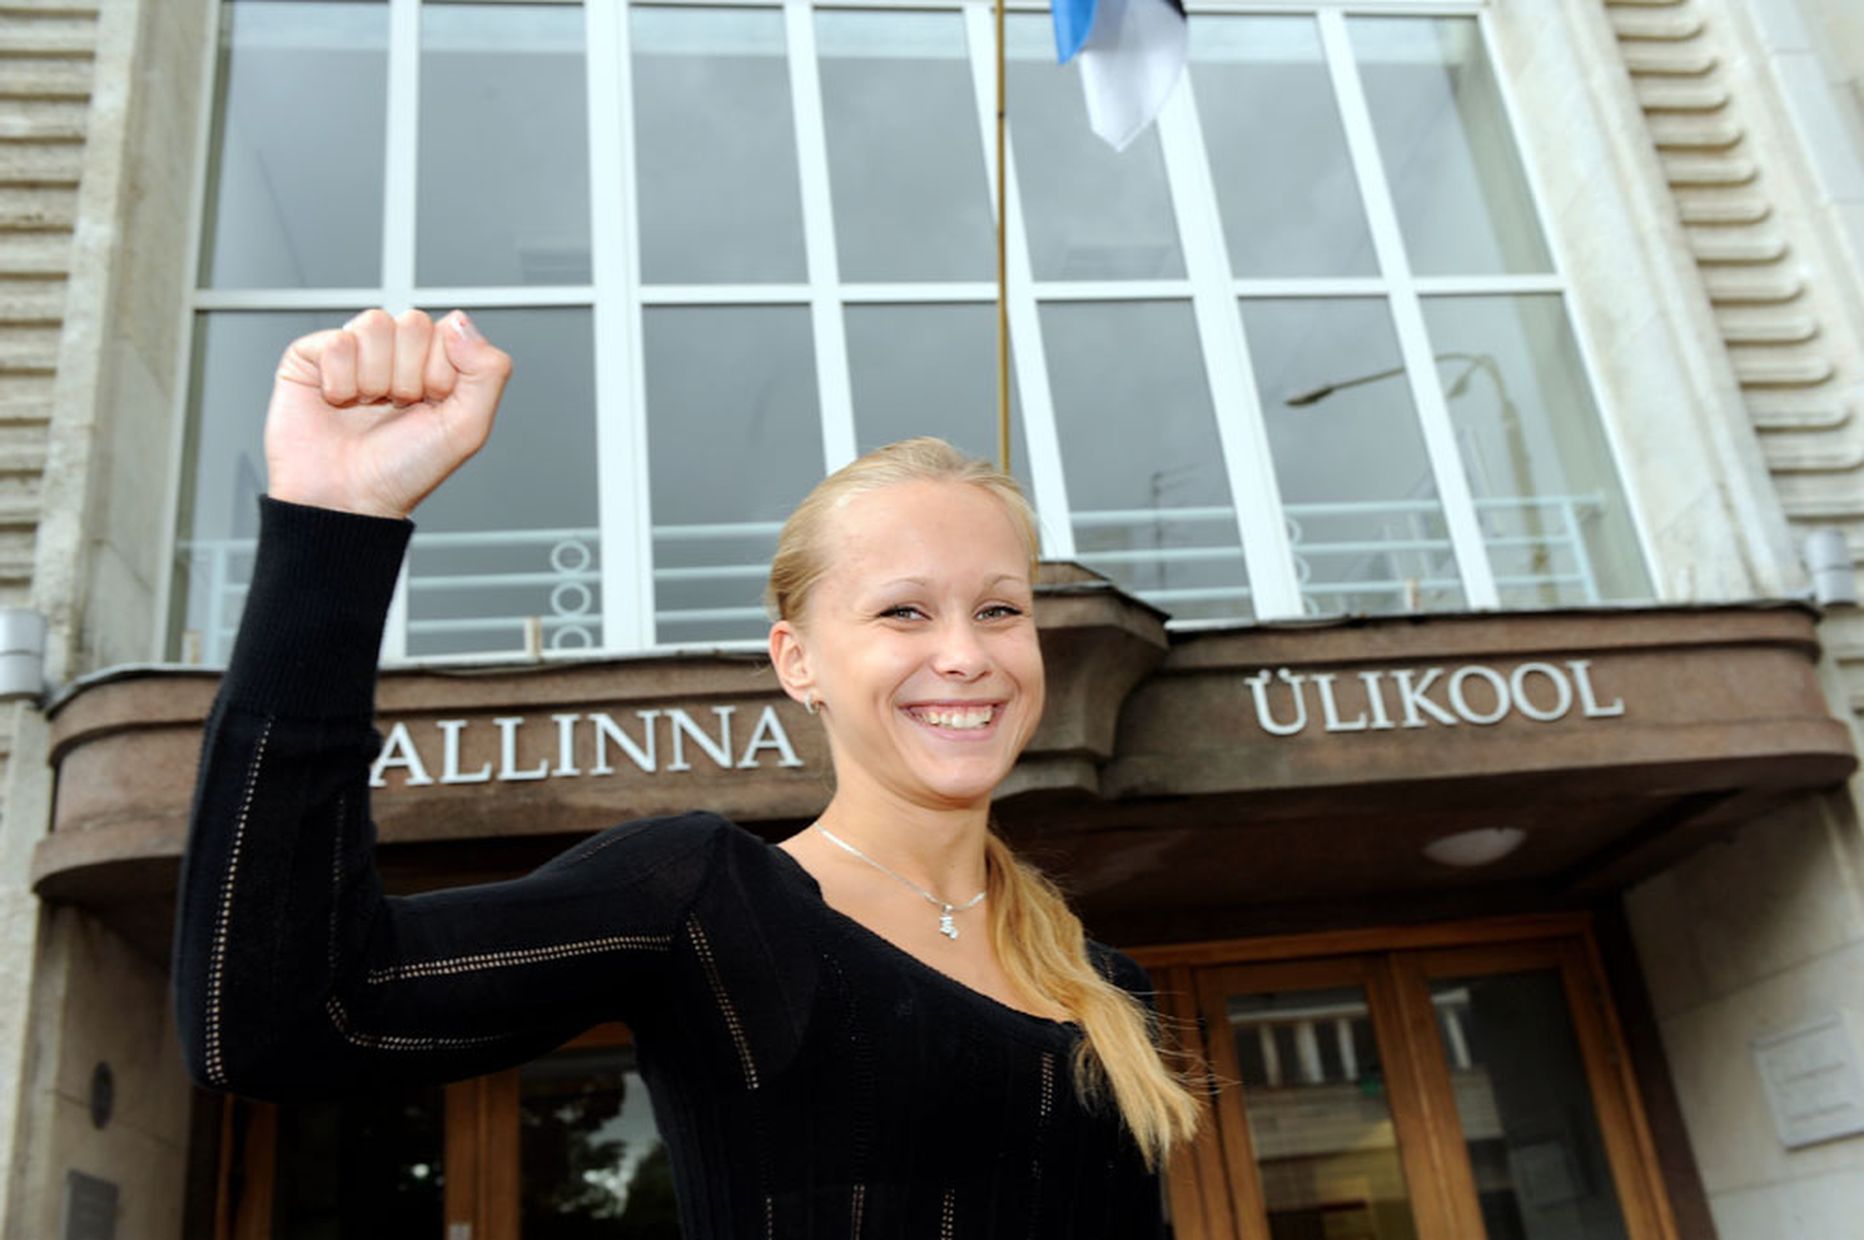 Скоро Таллиннский университет пополнится новыми студентами.